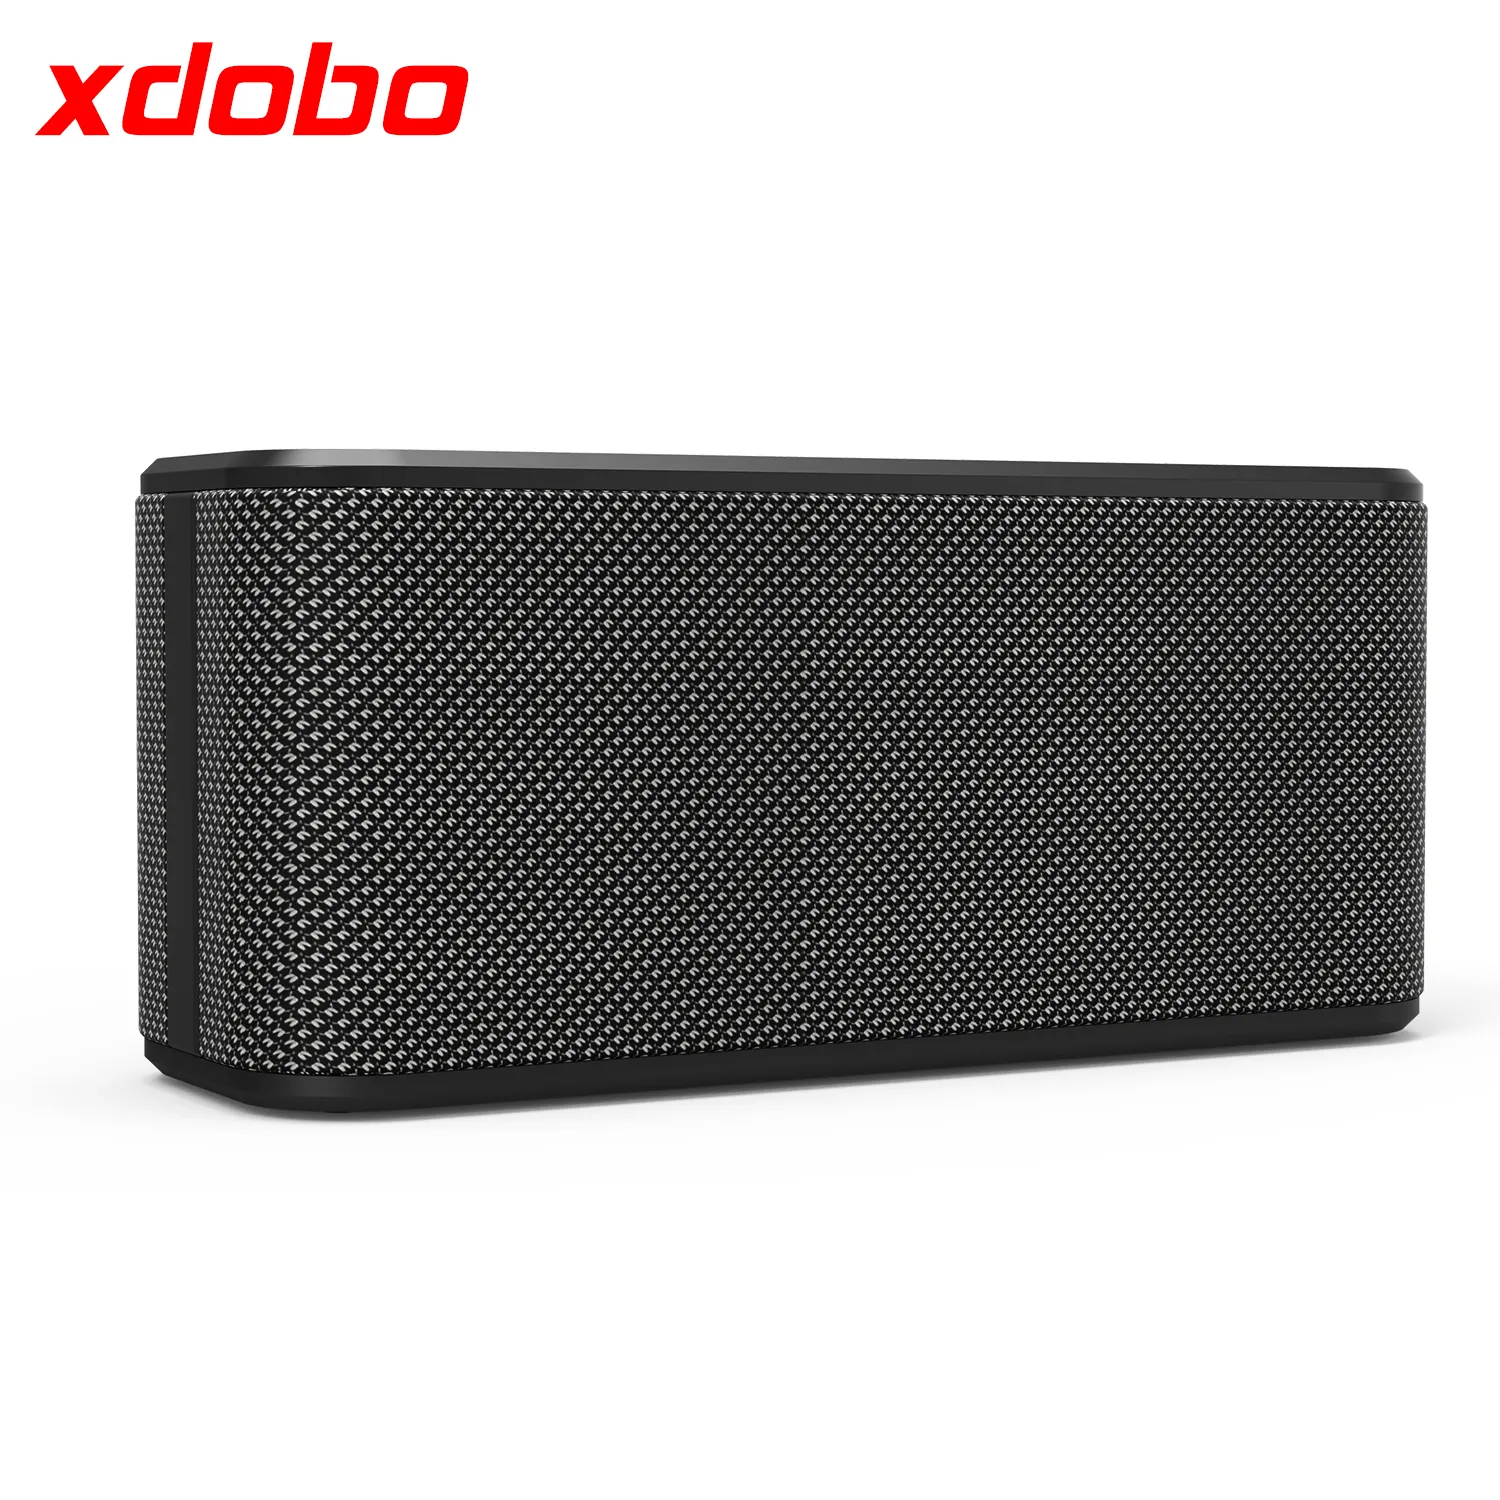 XDOBO yeni geldi tüketici elektroniği 80W ev kablosuz hoparlör için siyah satış